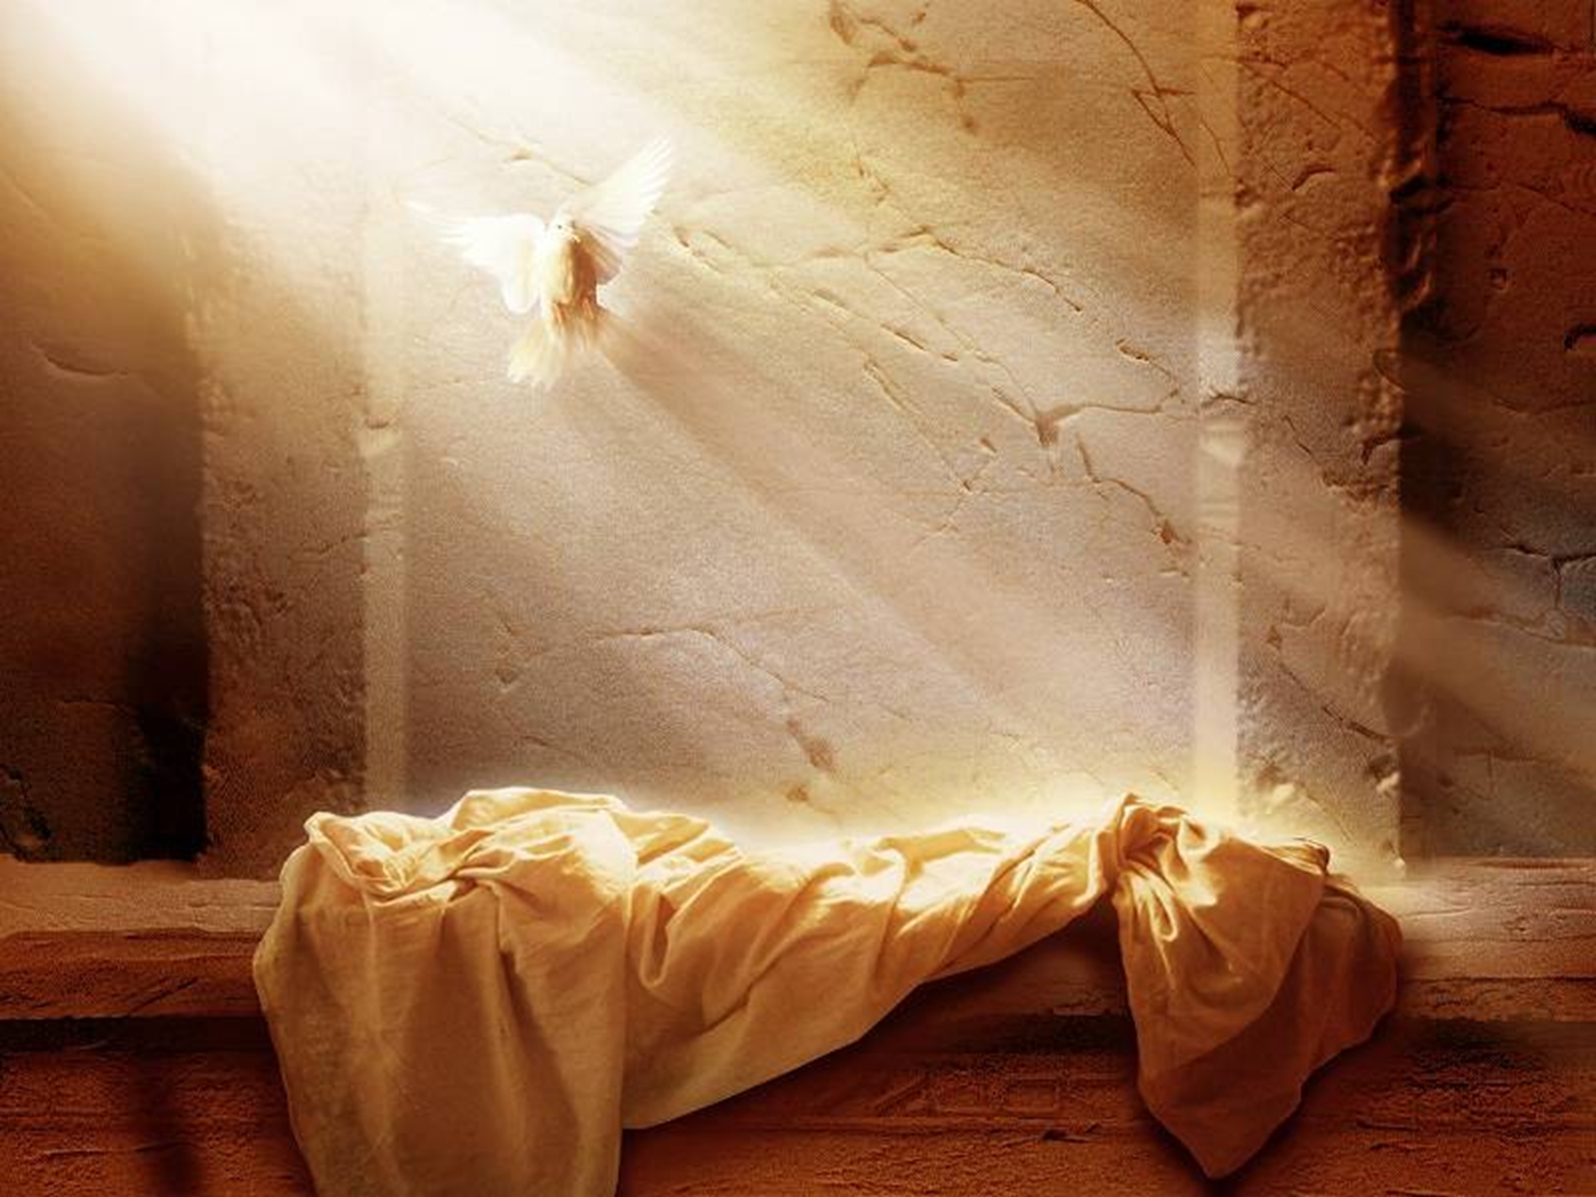 zmartwychwstanie